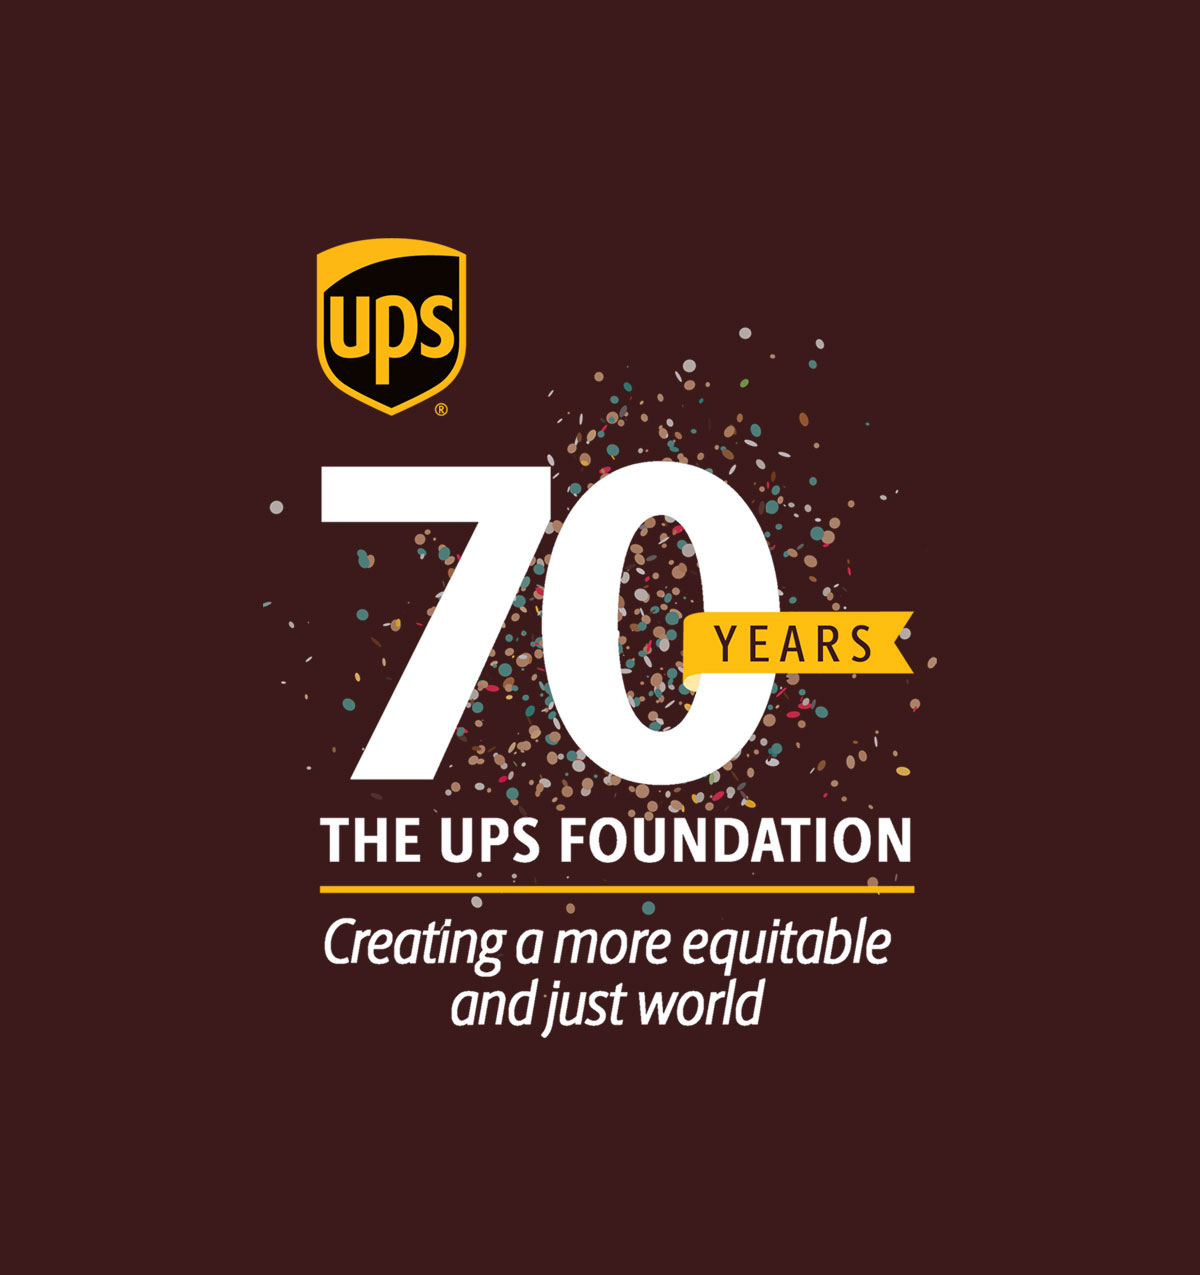 UPS | 70 Years